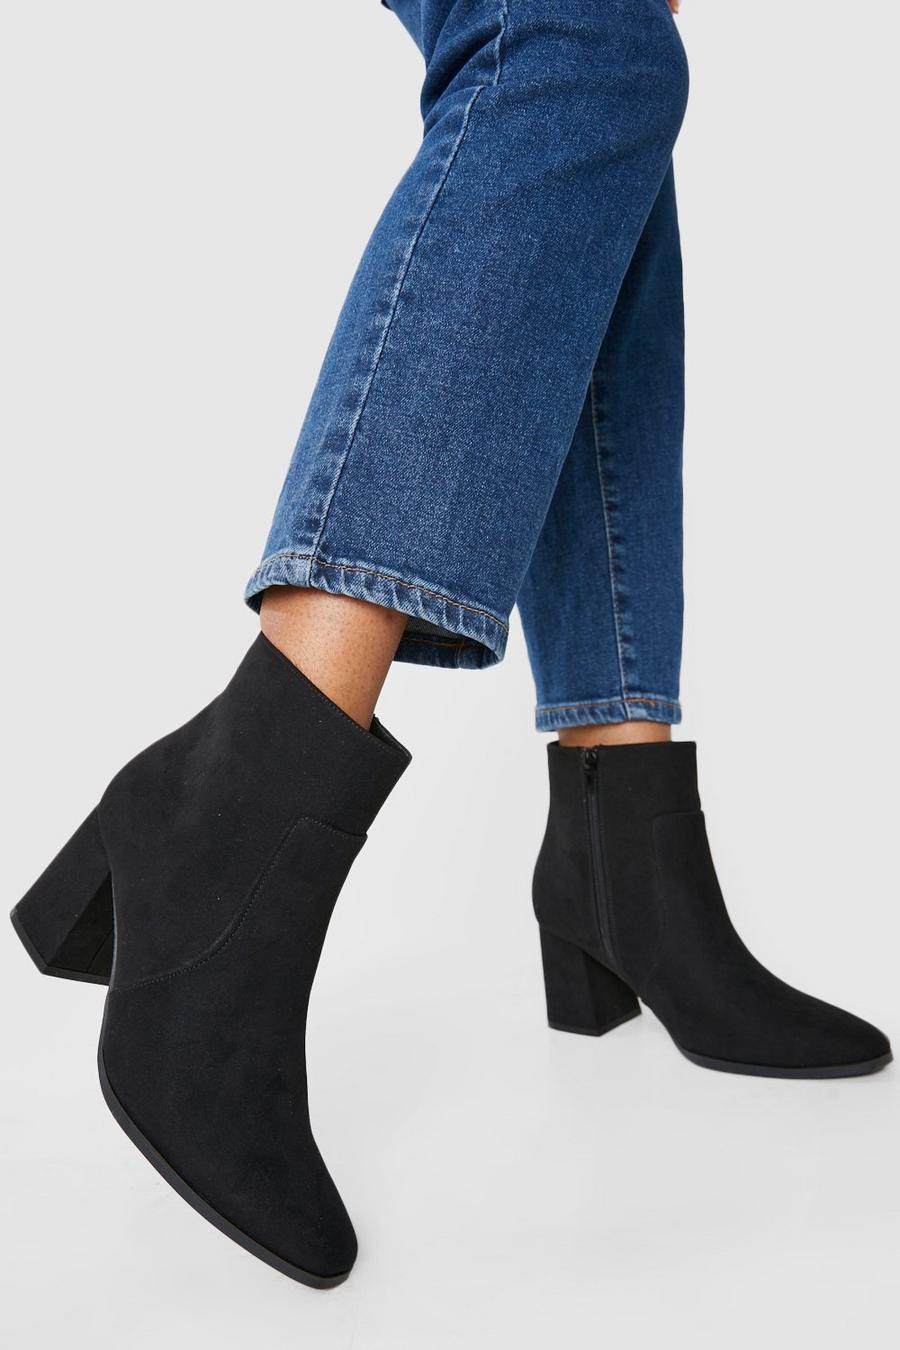 Black noir Wide Fit Block Heel Shoe Boots